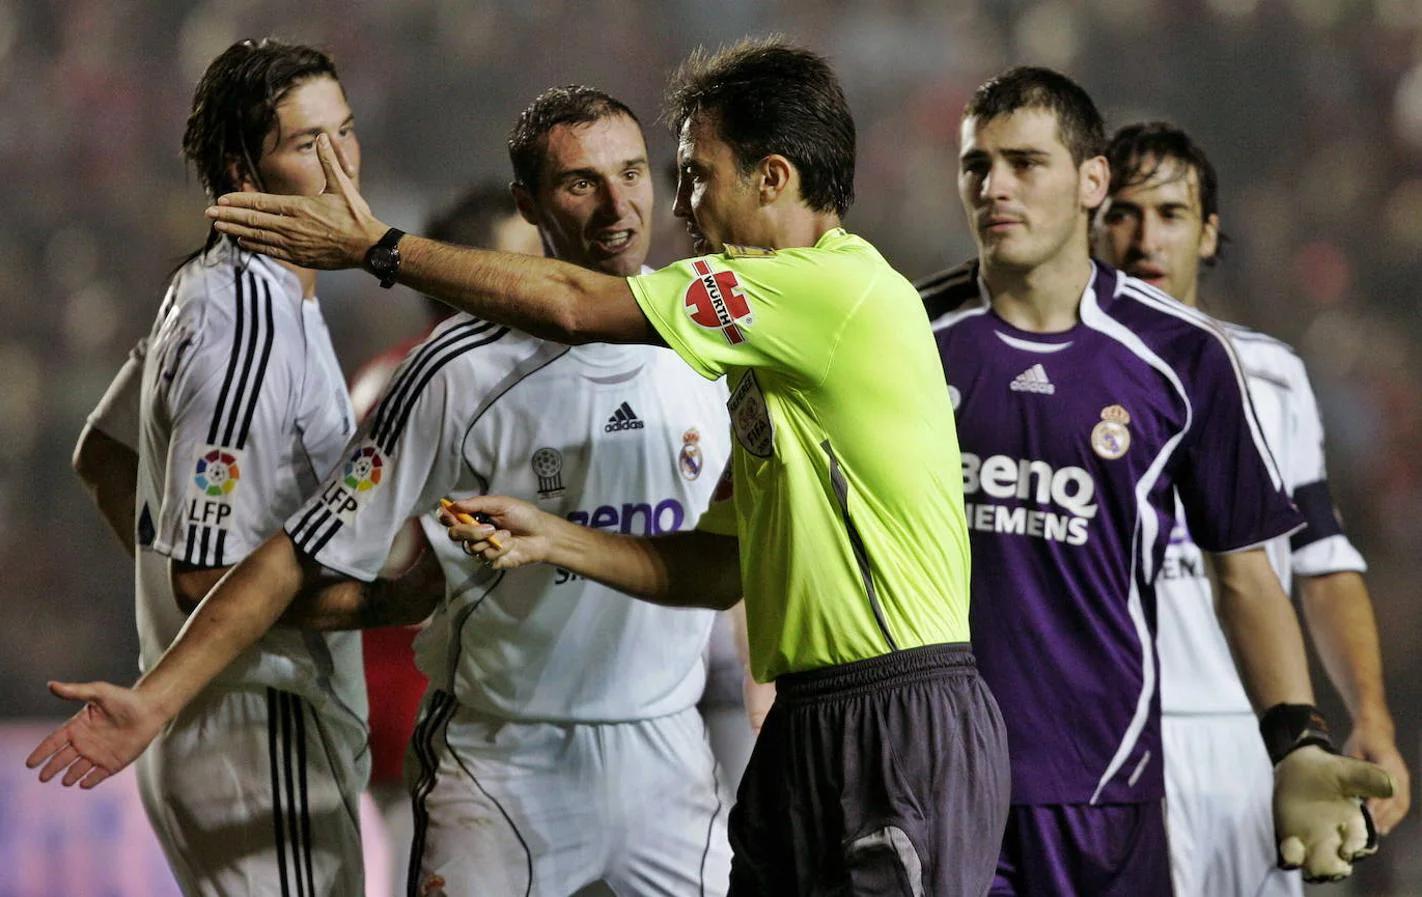 Los jugadores del Real Madrid, Sergio Ramos (i), Ivan Helguera (2i), e Iker Casillas (d), protestan al arbitro Manuel Enrique Mejuto Gonzalez el penalti pitado a favor del Gimnastic de Tarragona, durante el partido que enfrentó a ambos equipos en el Nou Estadi de Tarragona en 2006.